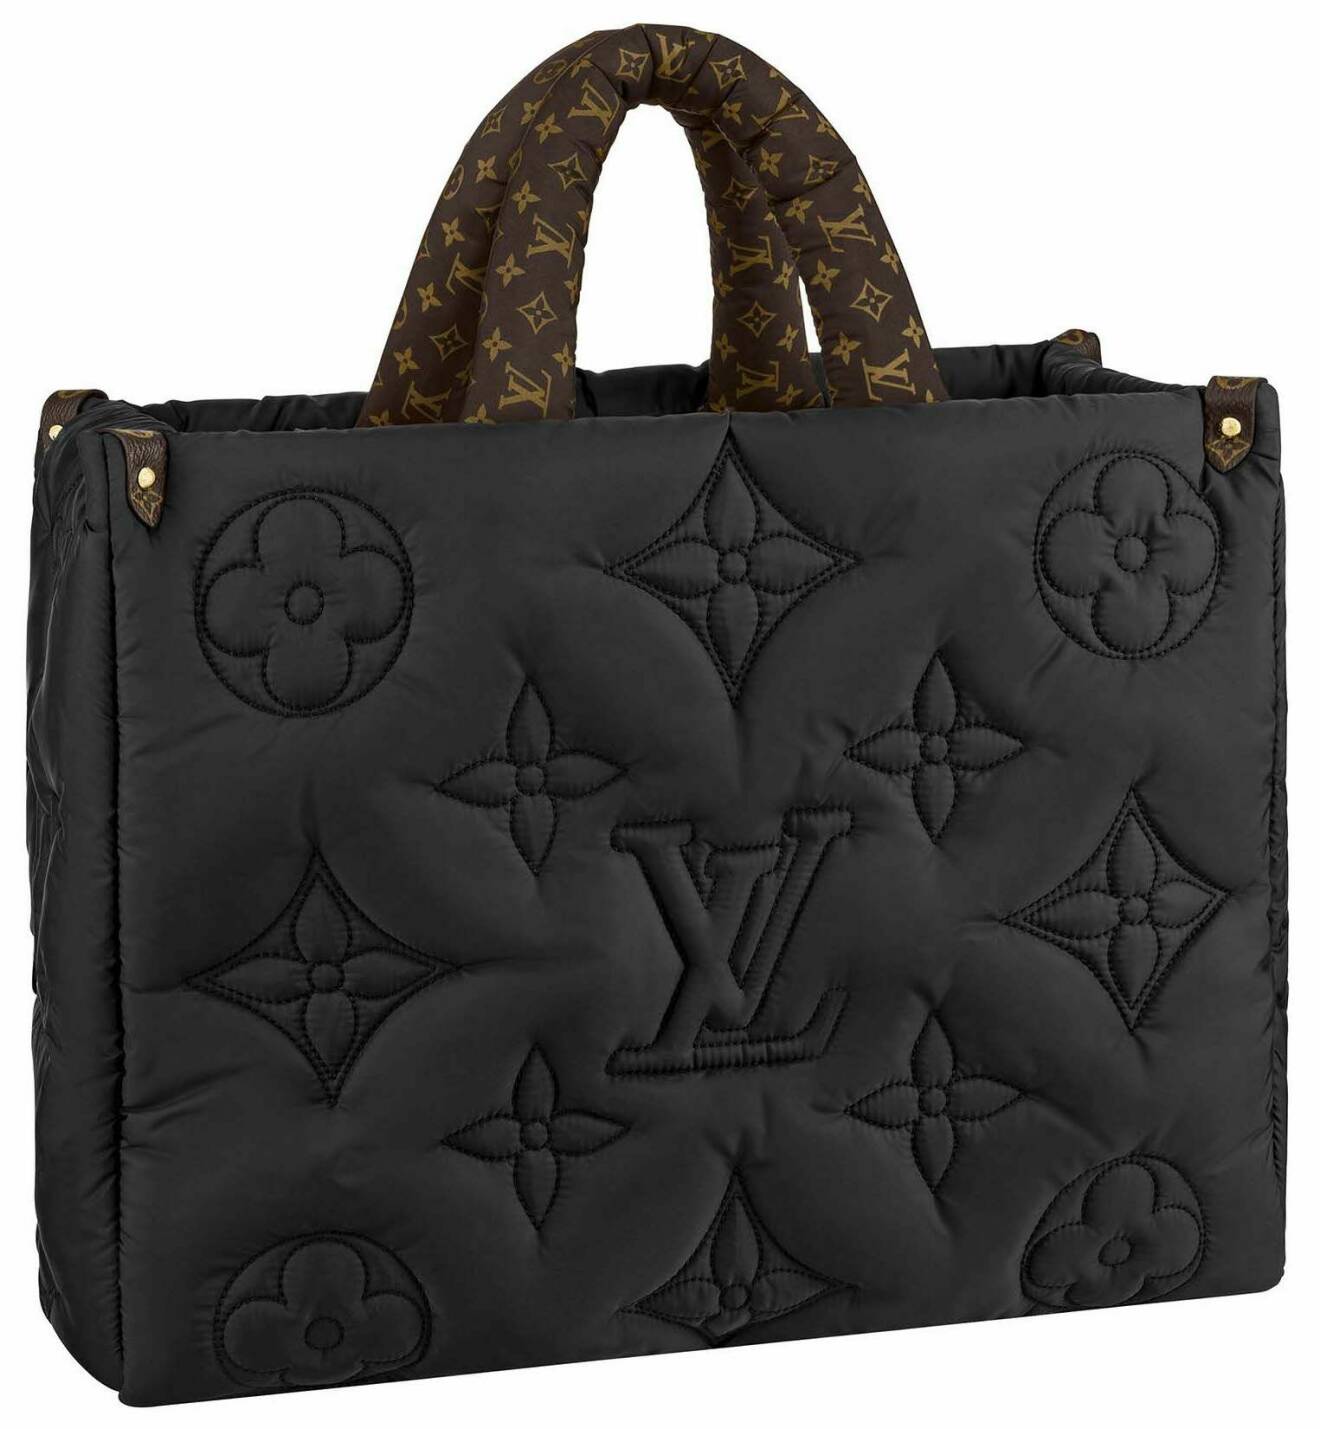 Vadderad väska i svart från Louis Vuitton.